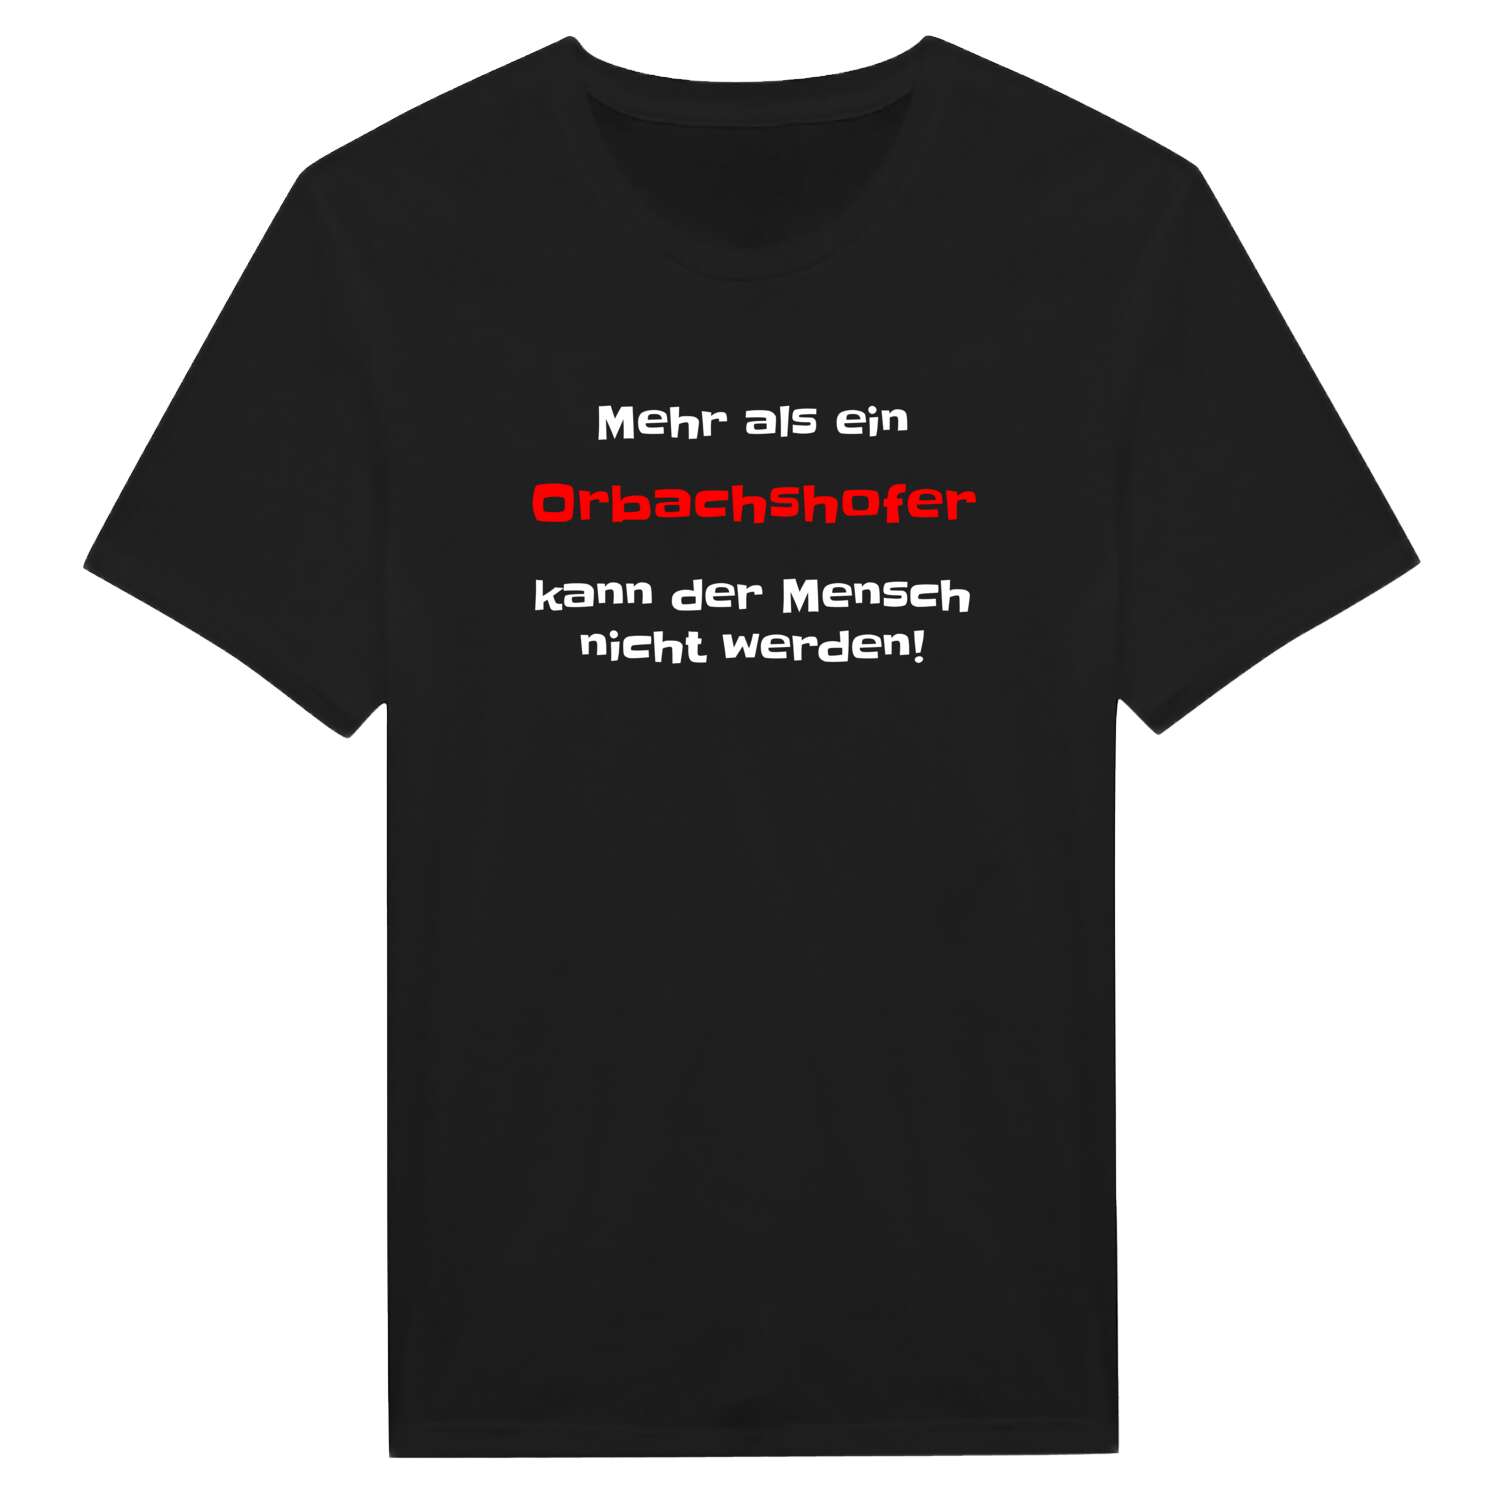 Orbachshof T-Shirt »Mehr als ein«